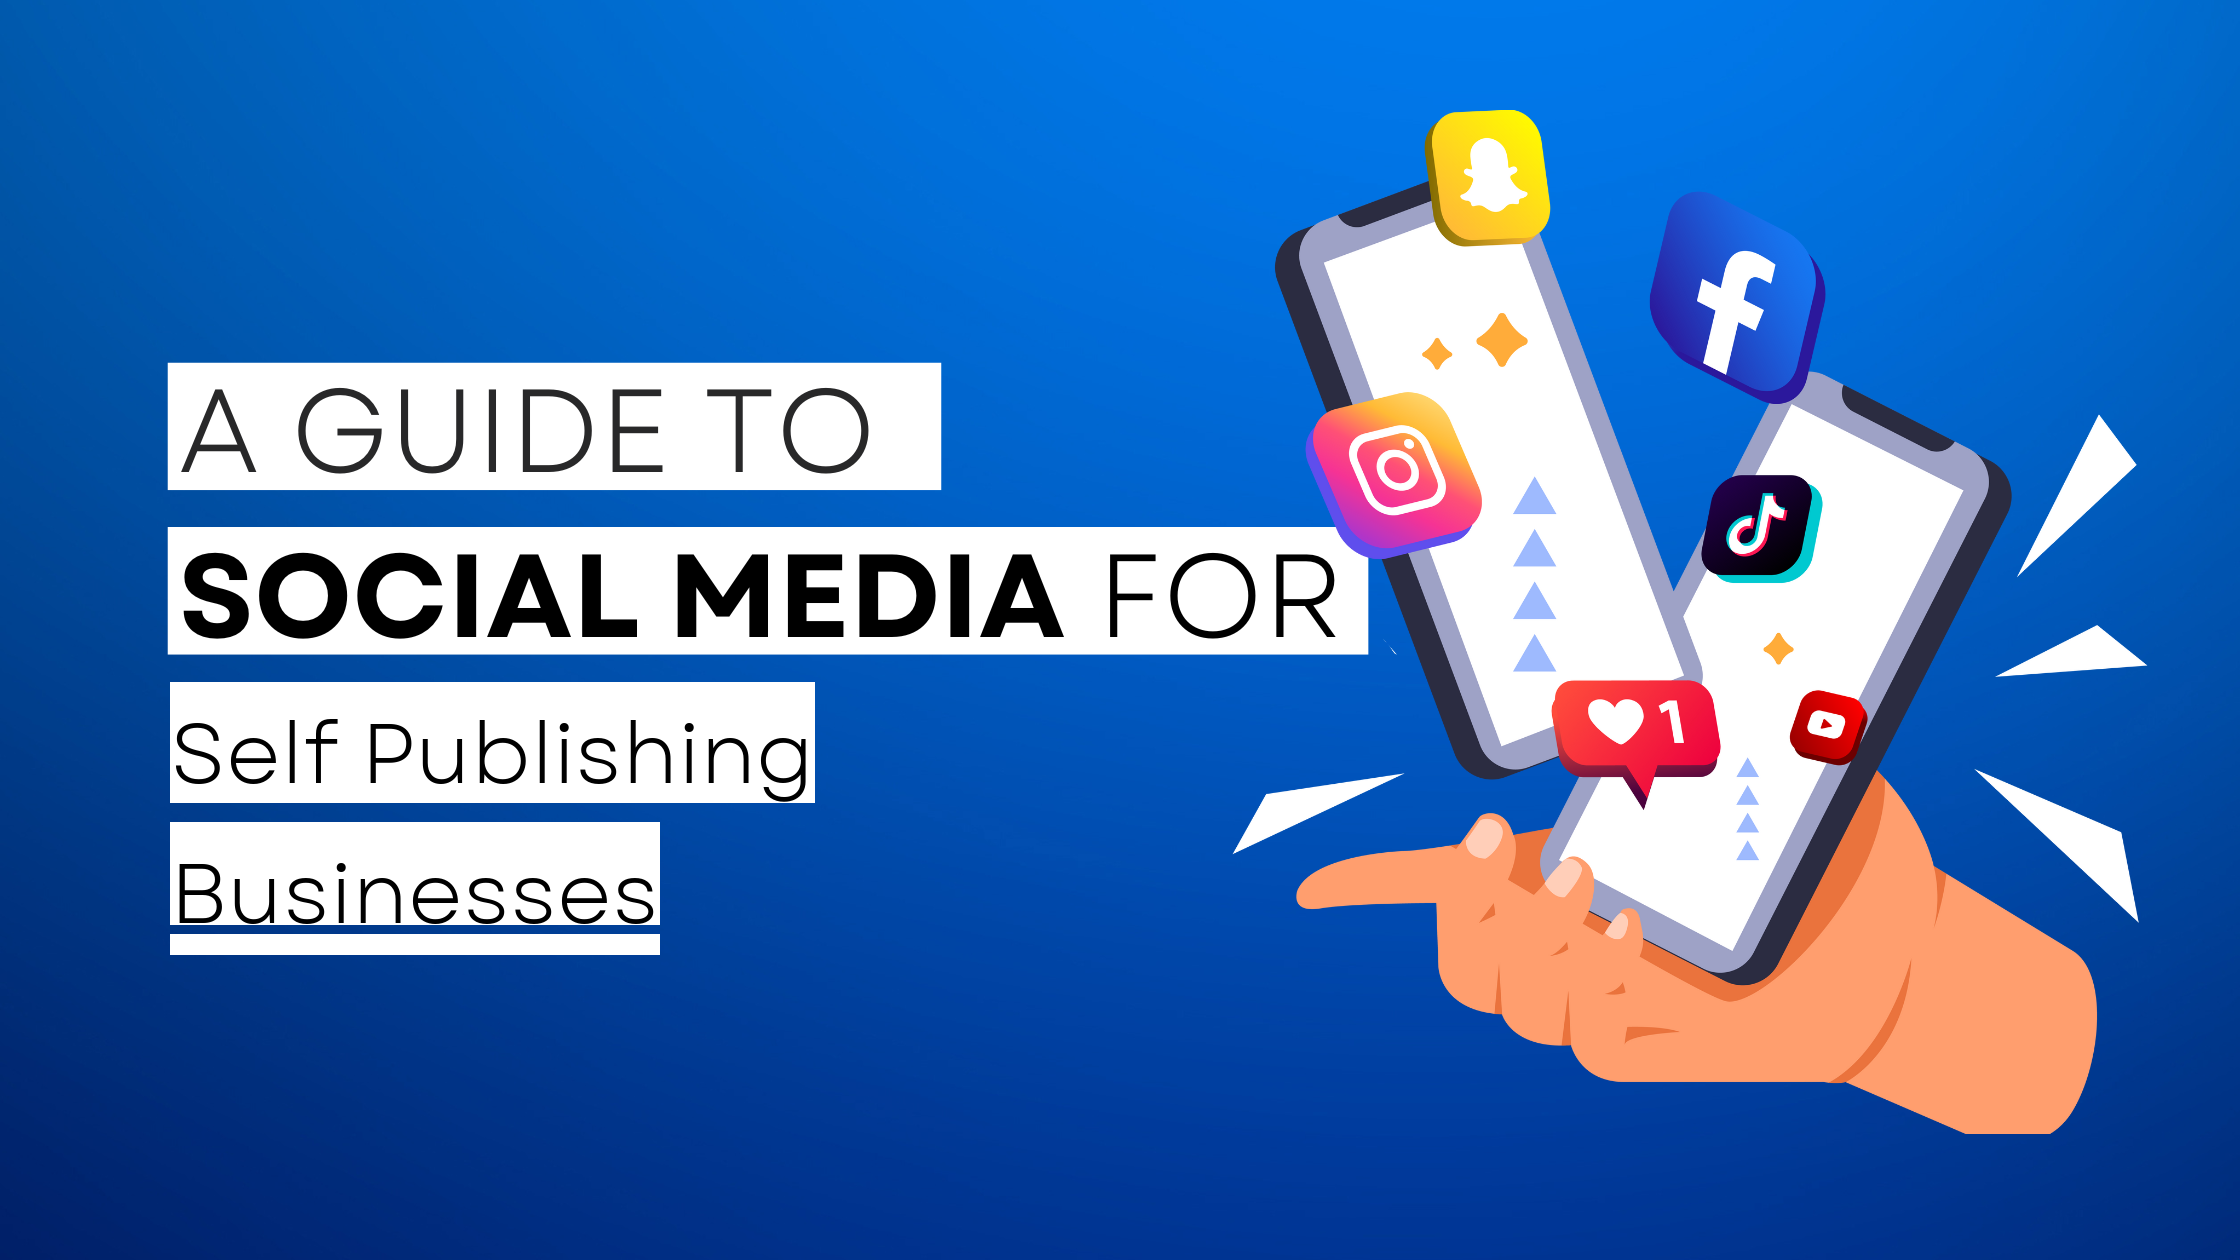 How to start Self Publishing on social media